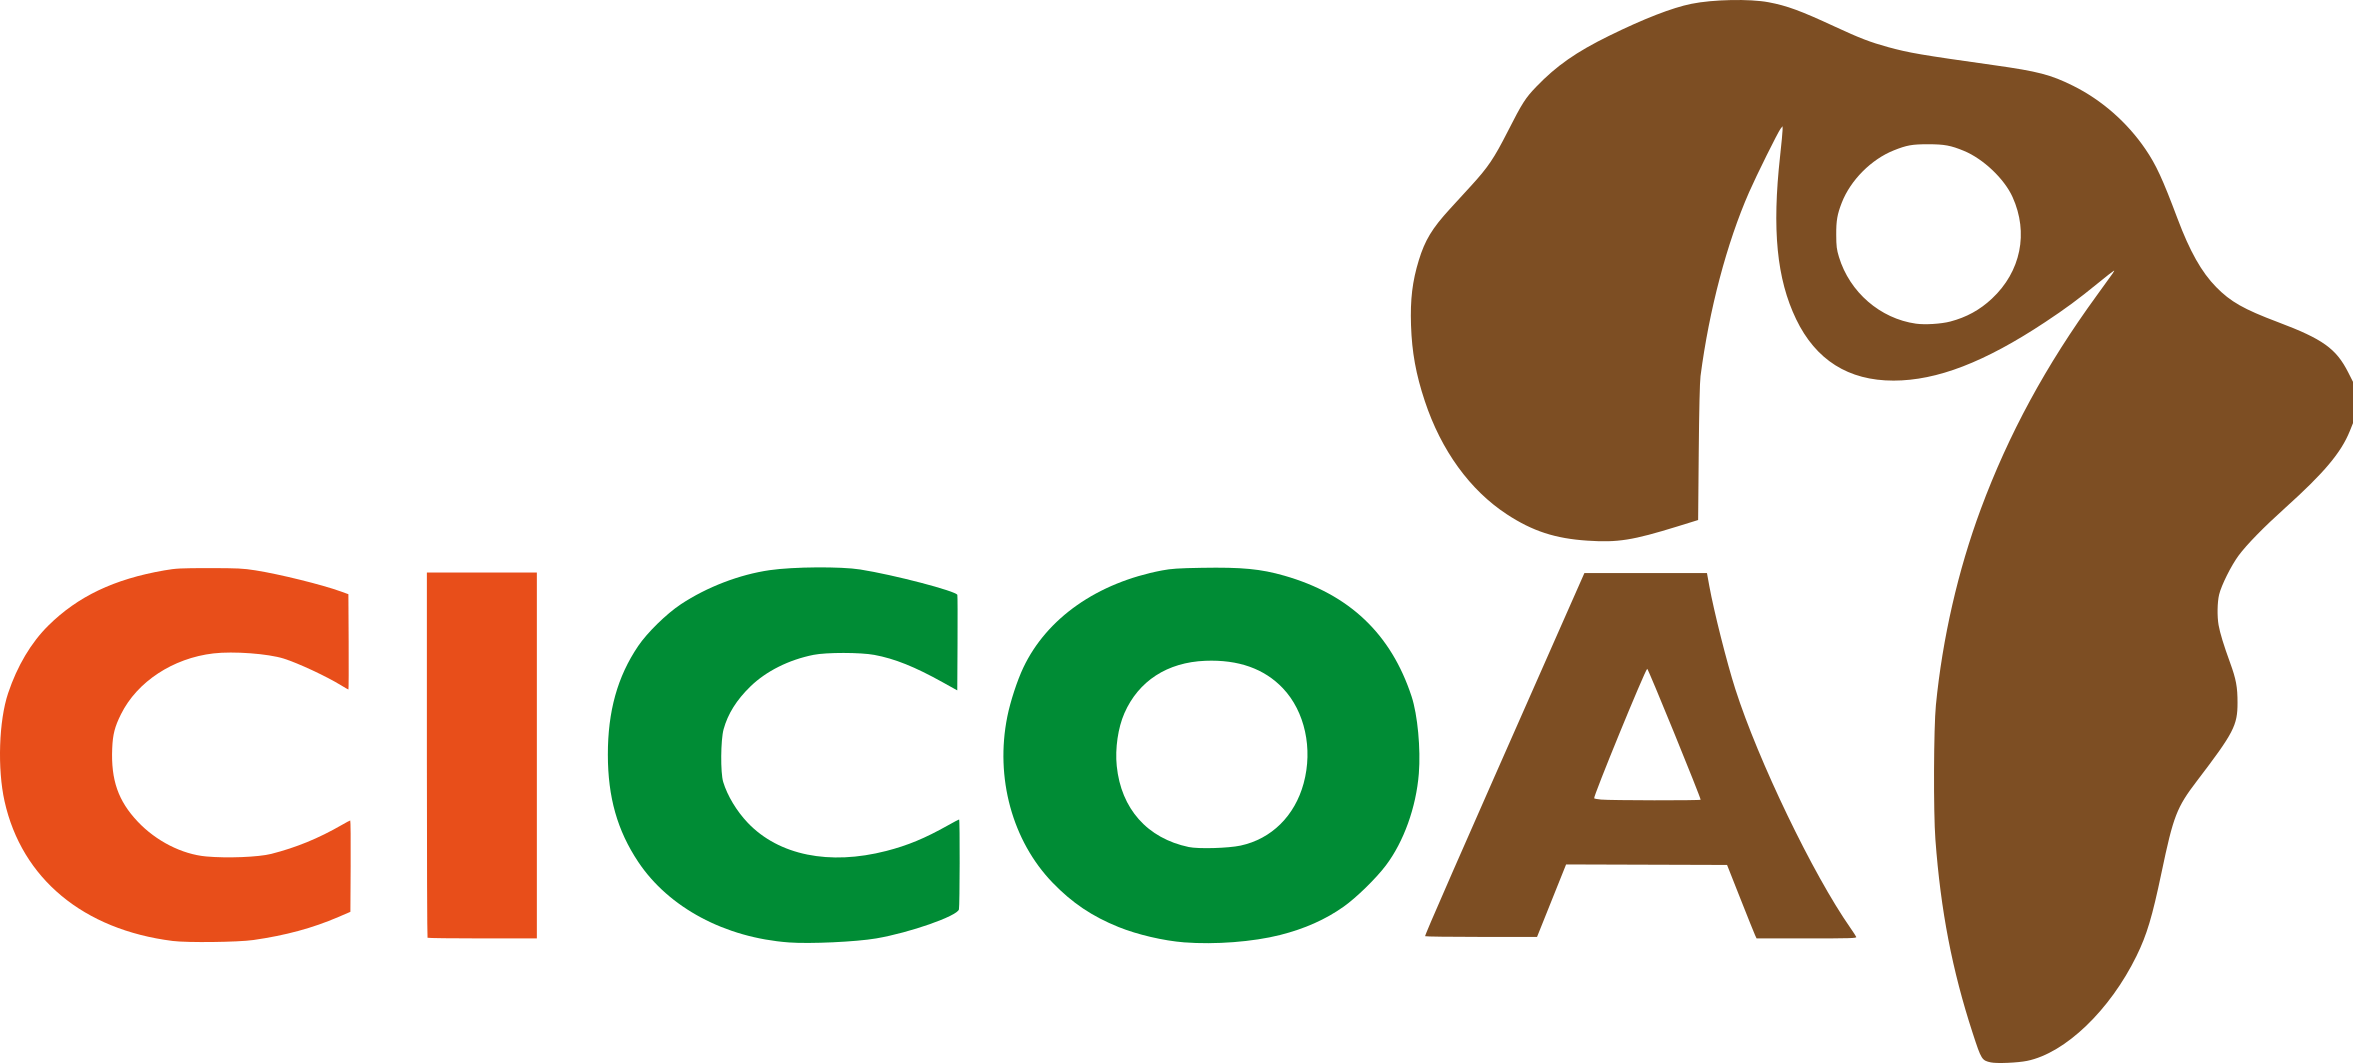 cicoa logo color